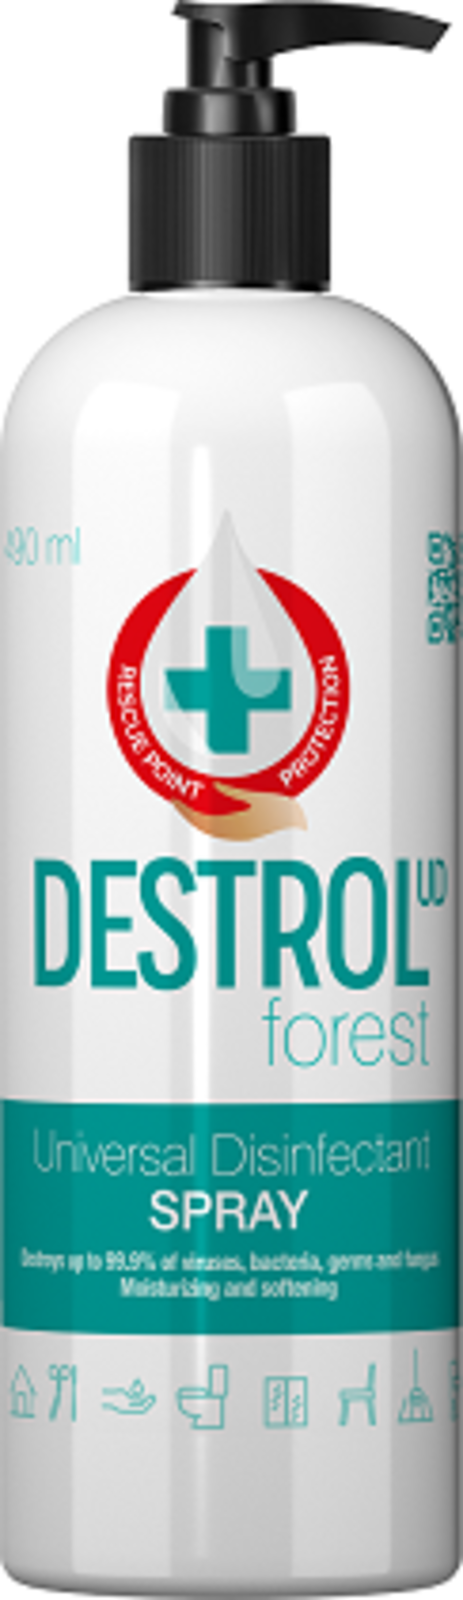 Univerzálny dezinfekčný sprej  Destrol - veľkosť: 500ml